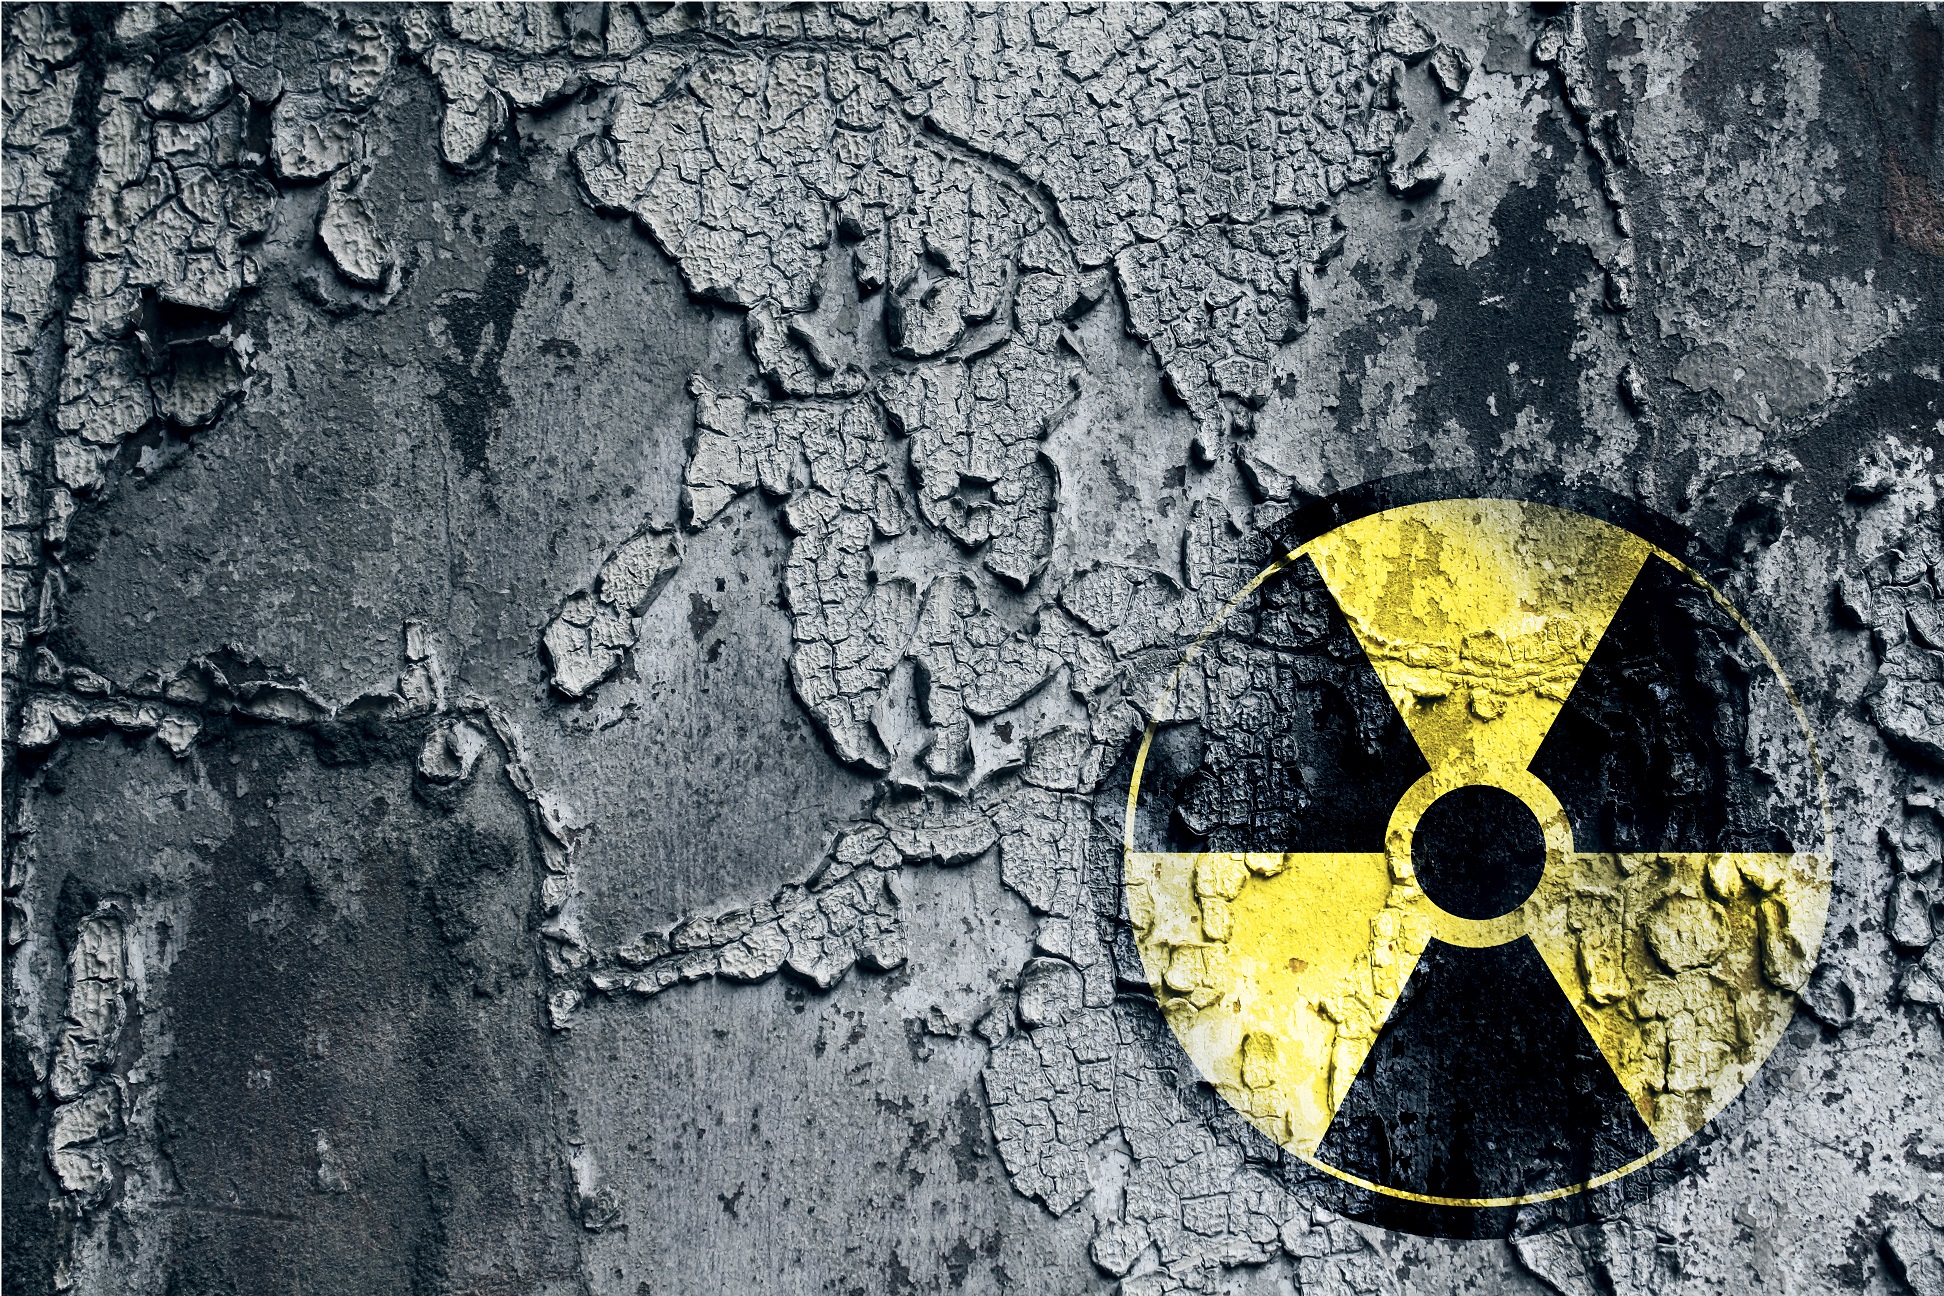 La catastrophe nucléaire de Fukushima est la deuxième plus grave après Tchernobyl. Y a-t-il eu plus de cancers de la thyroïde après cet accident ? © lassedesignen, Shutterstock